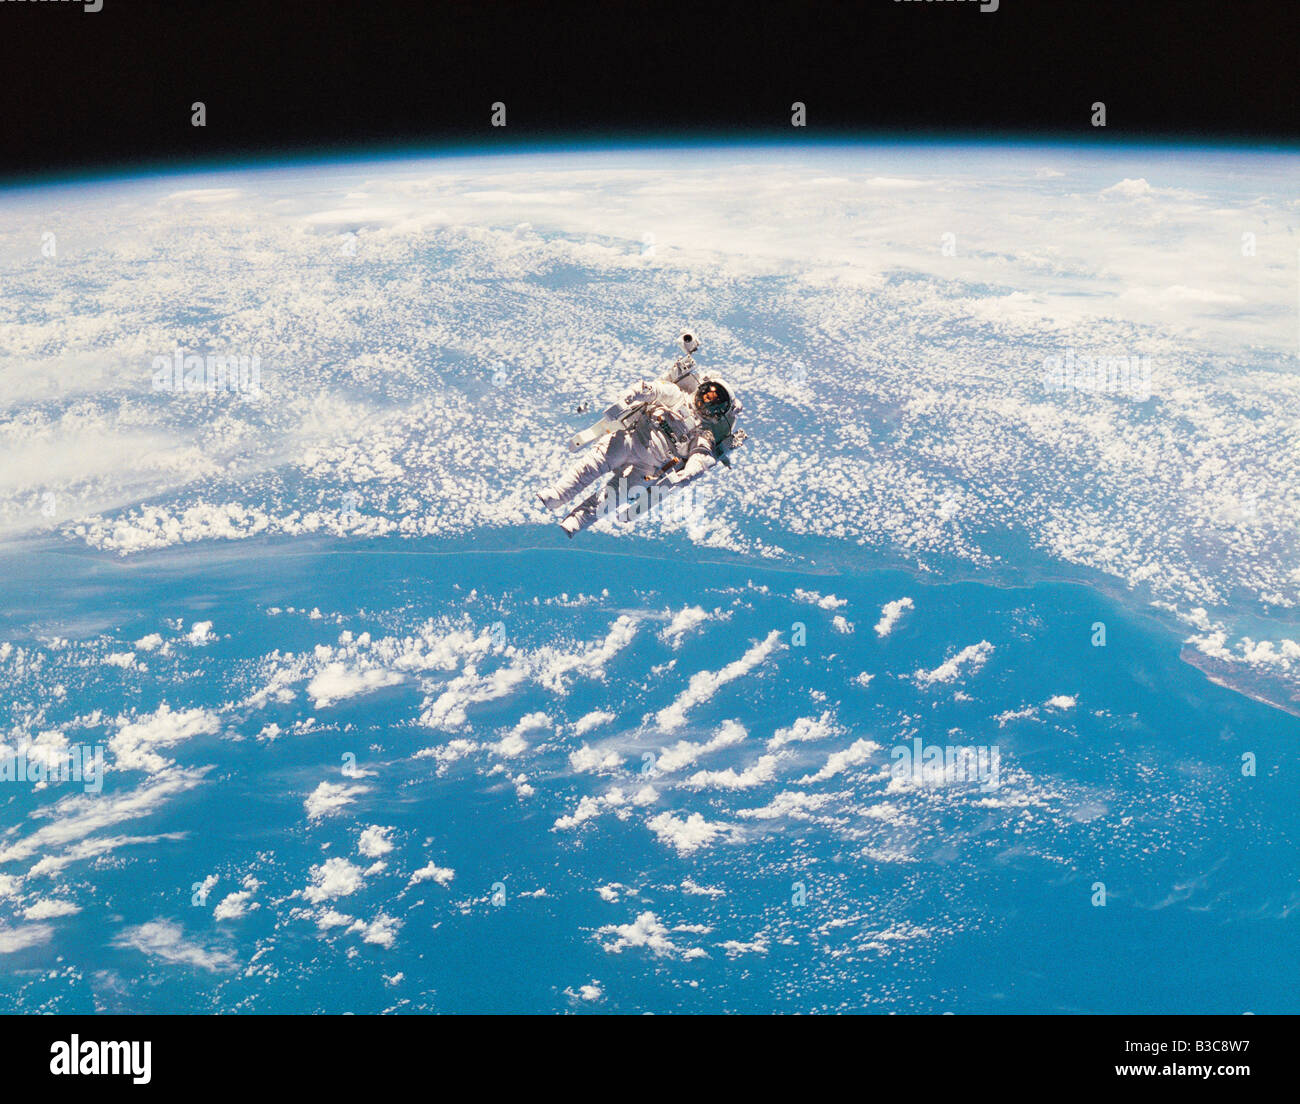 Astronauten im Orbit über dem Planeten Erde in bemannten manövrieren Gerät schweben Stockfoto